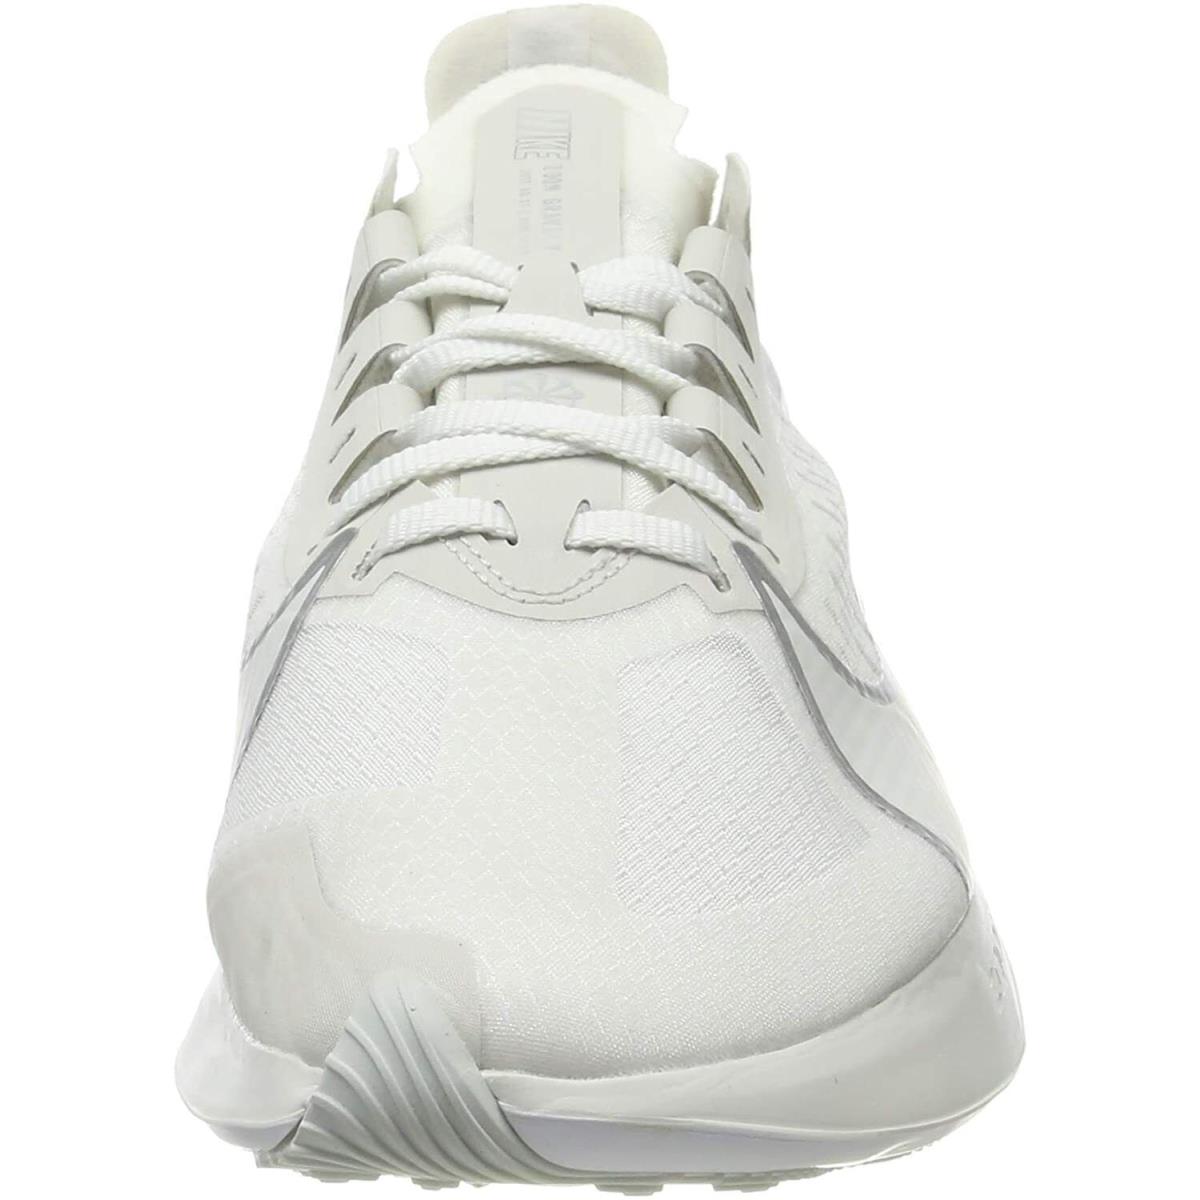 Nike shoes Shox Gravity - White 0